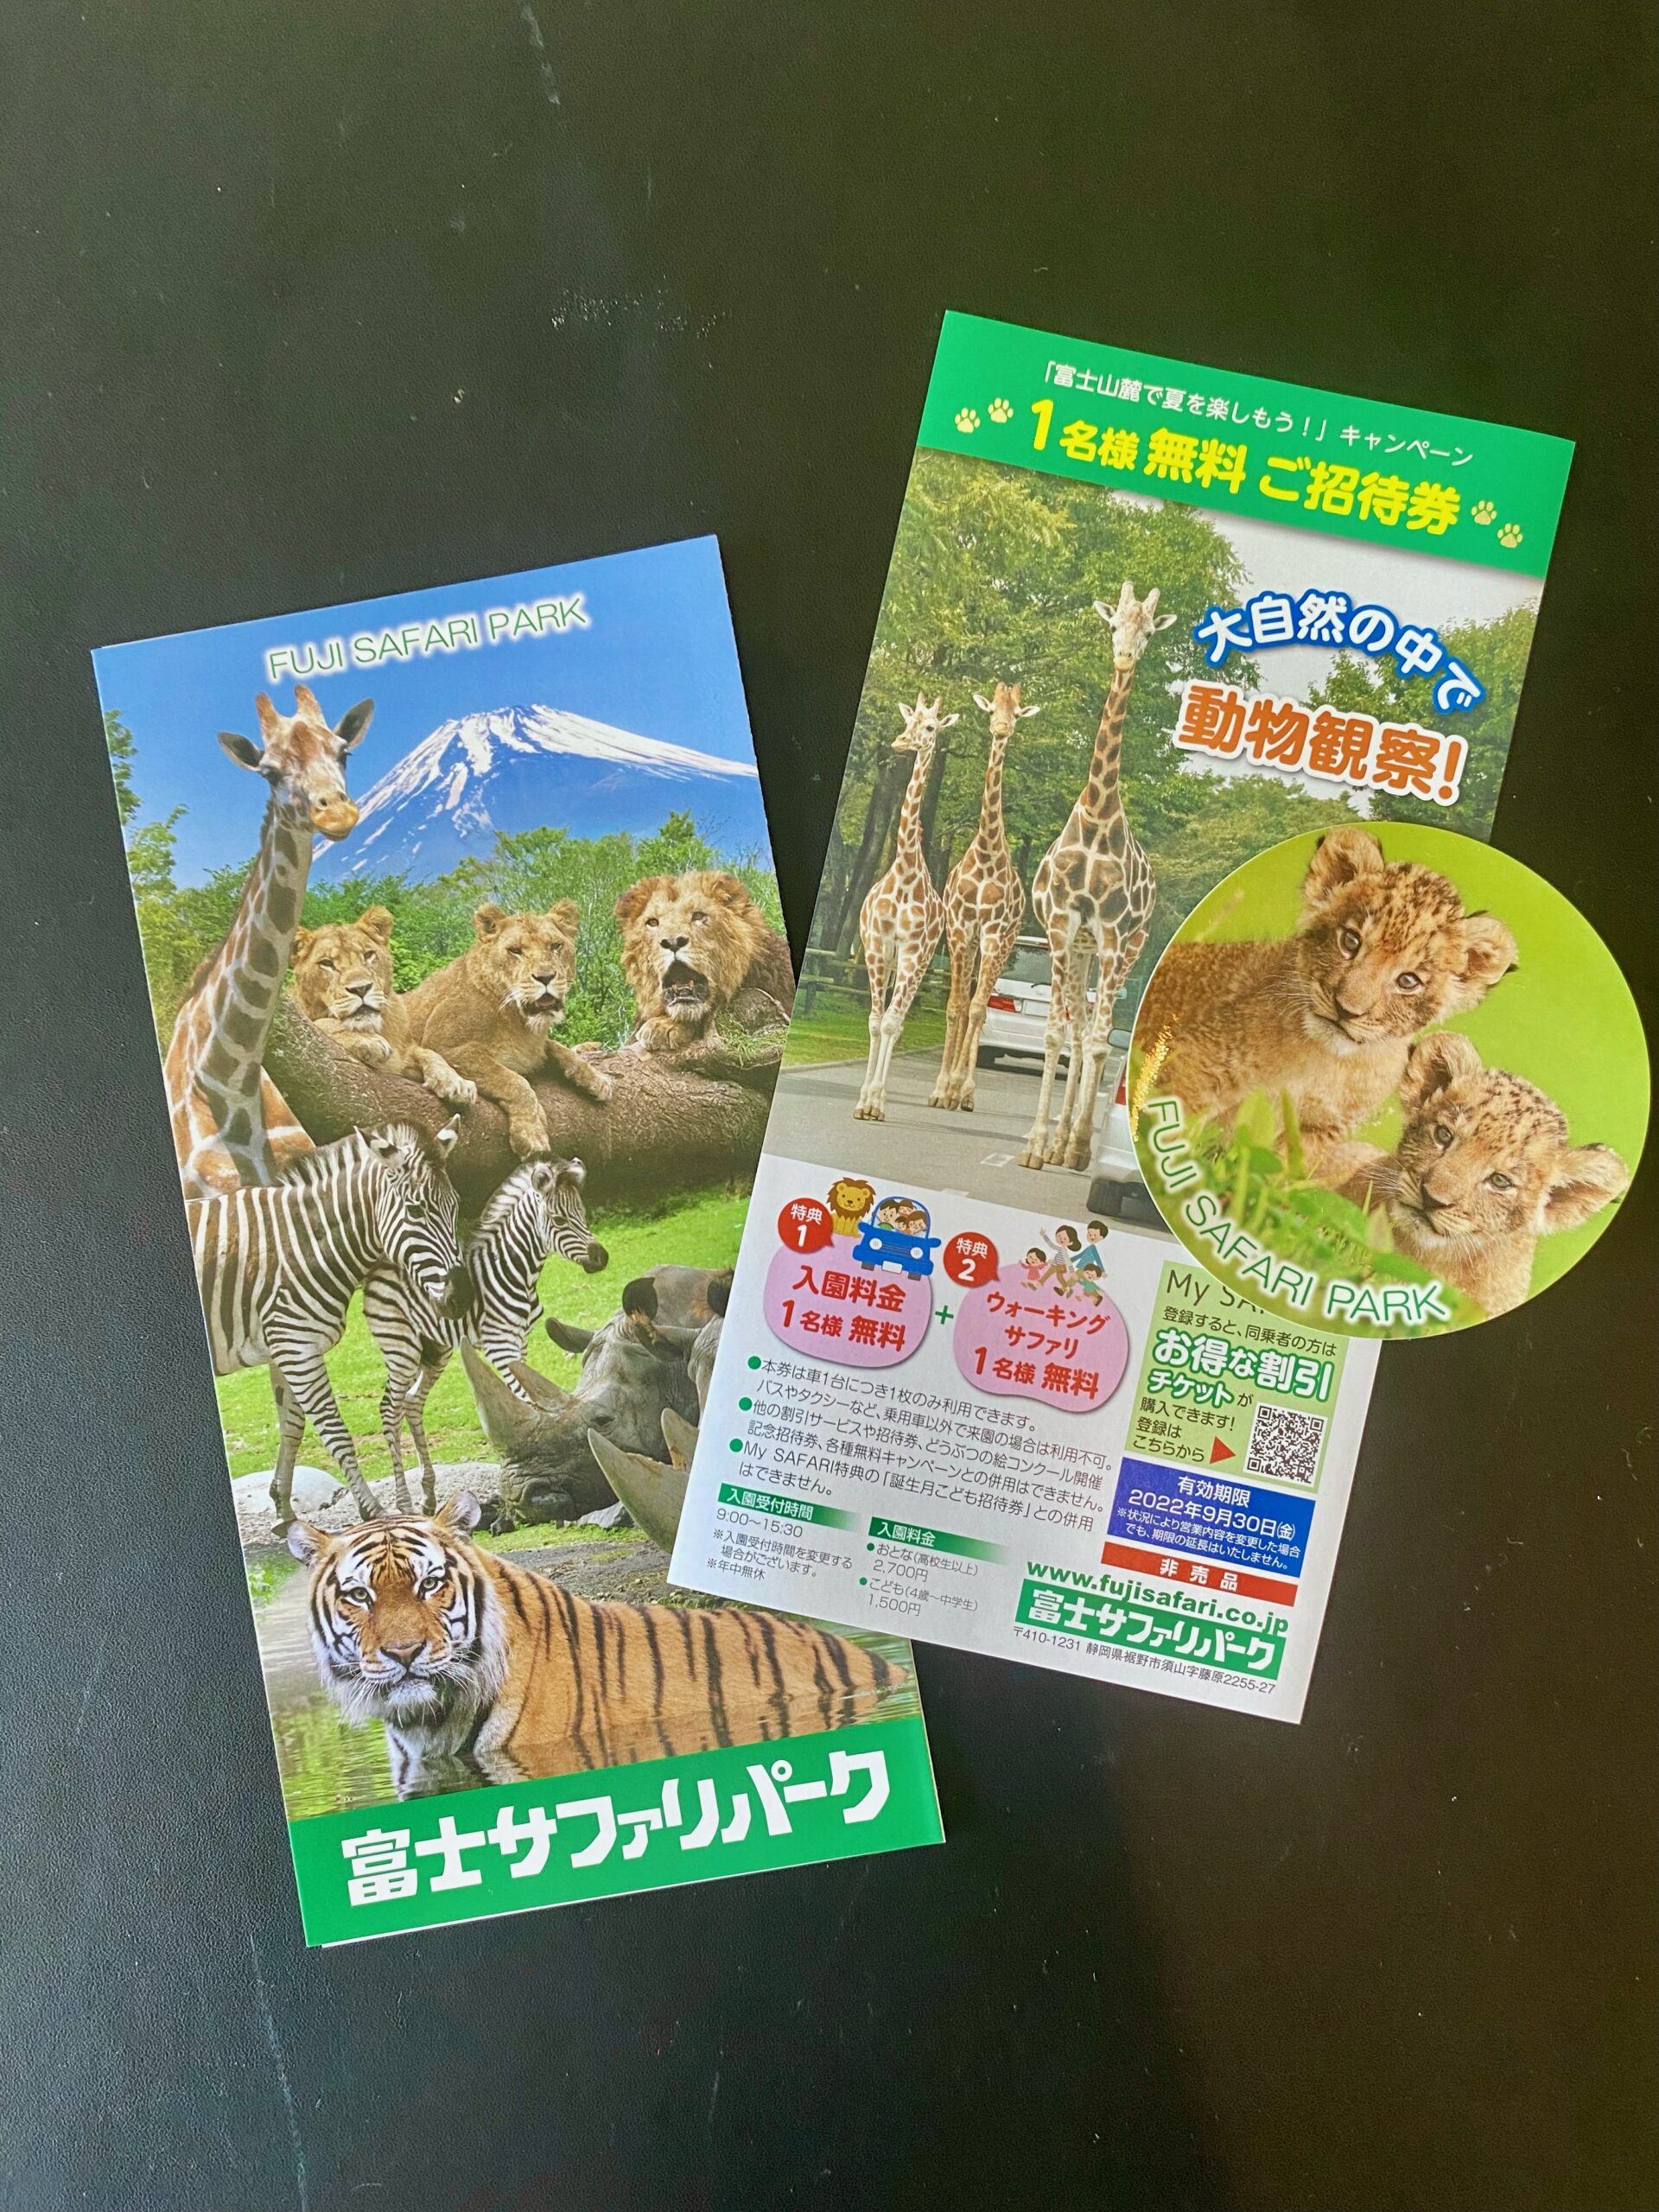 富士サファリパーク ご招待券 - 動物園